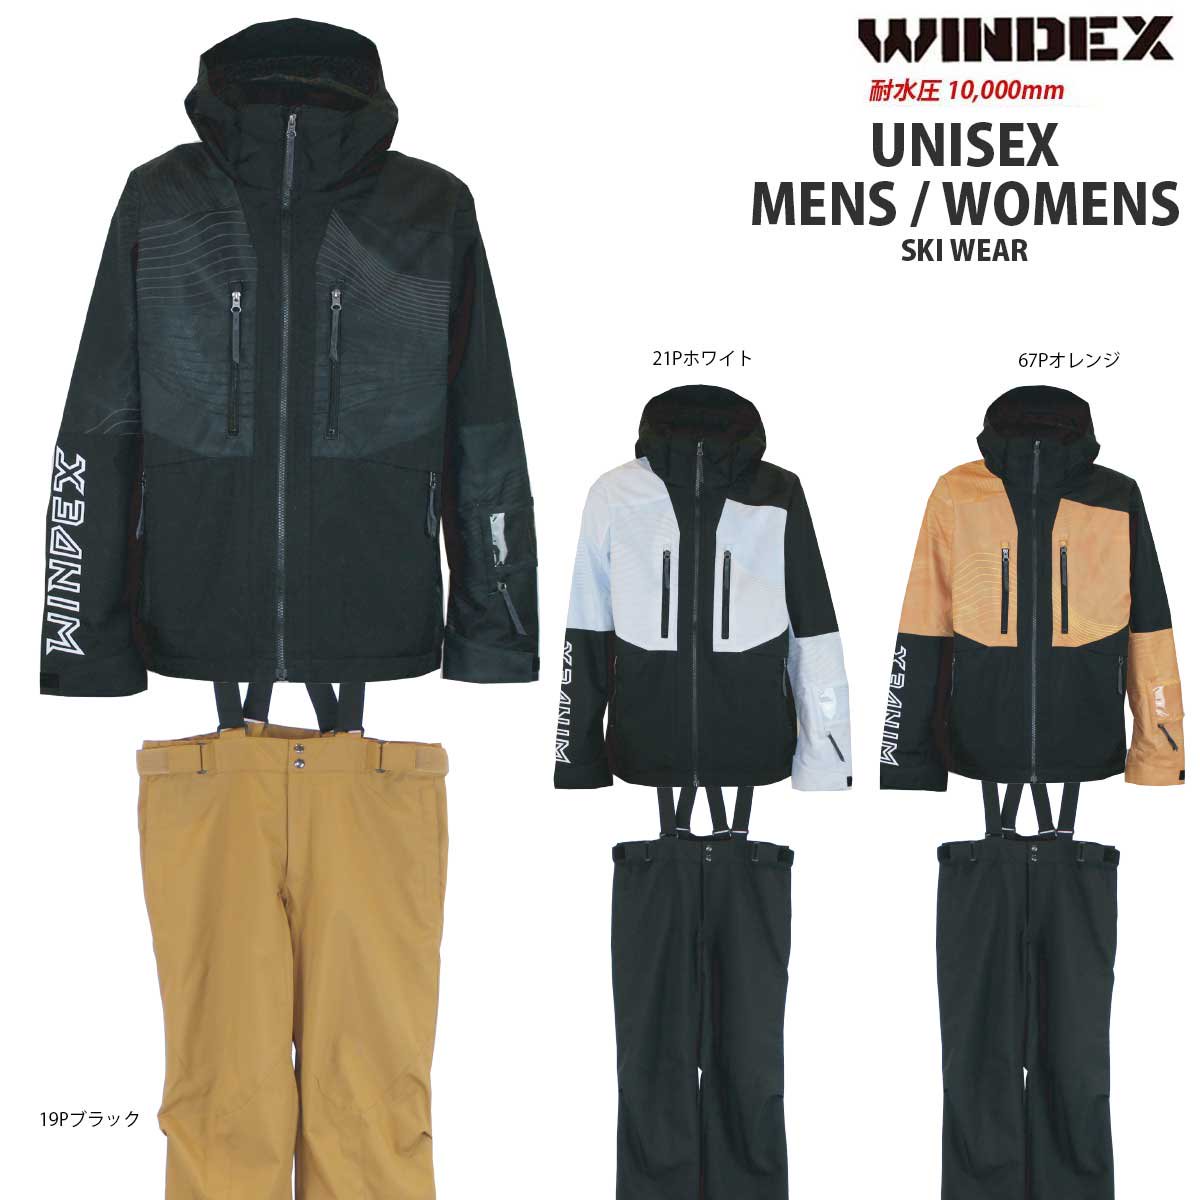 スキーウェア上下セット WINDEX